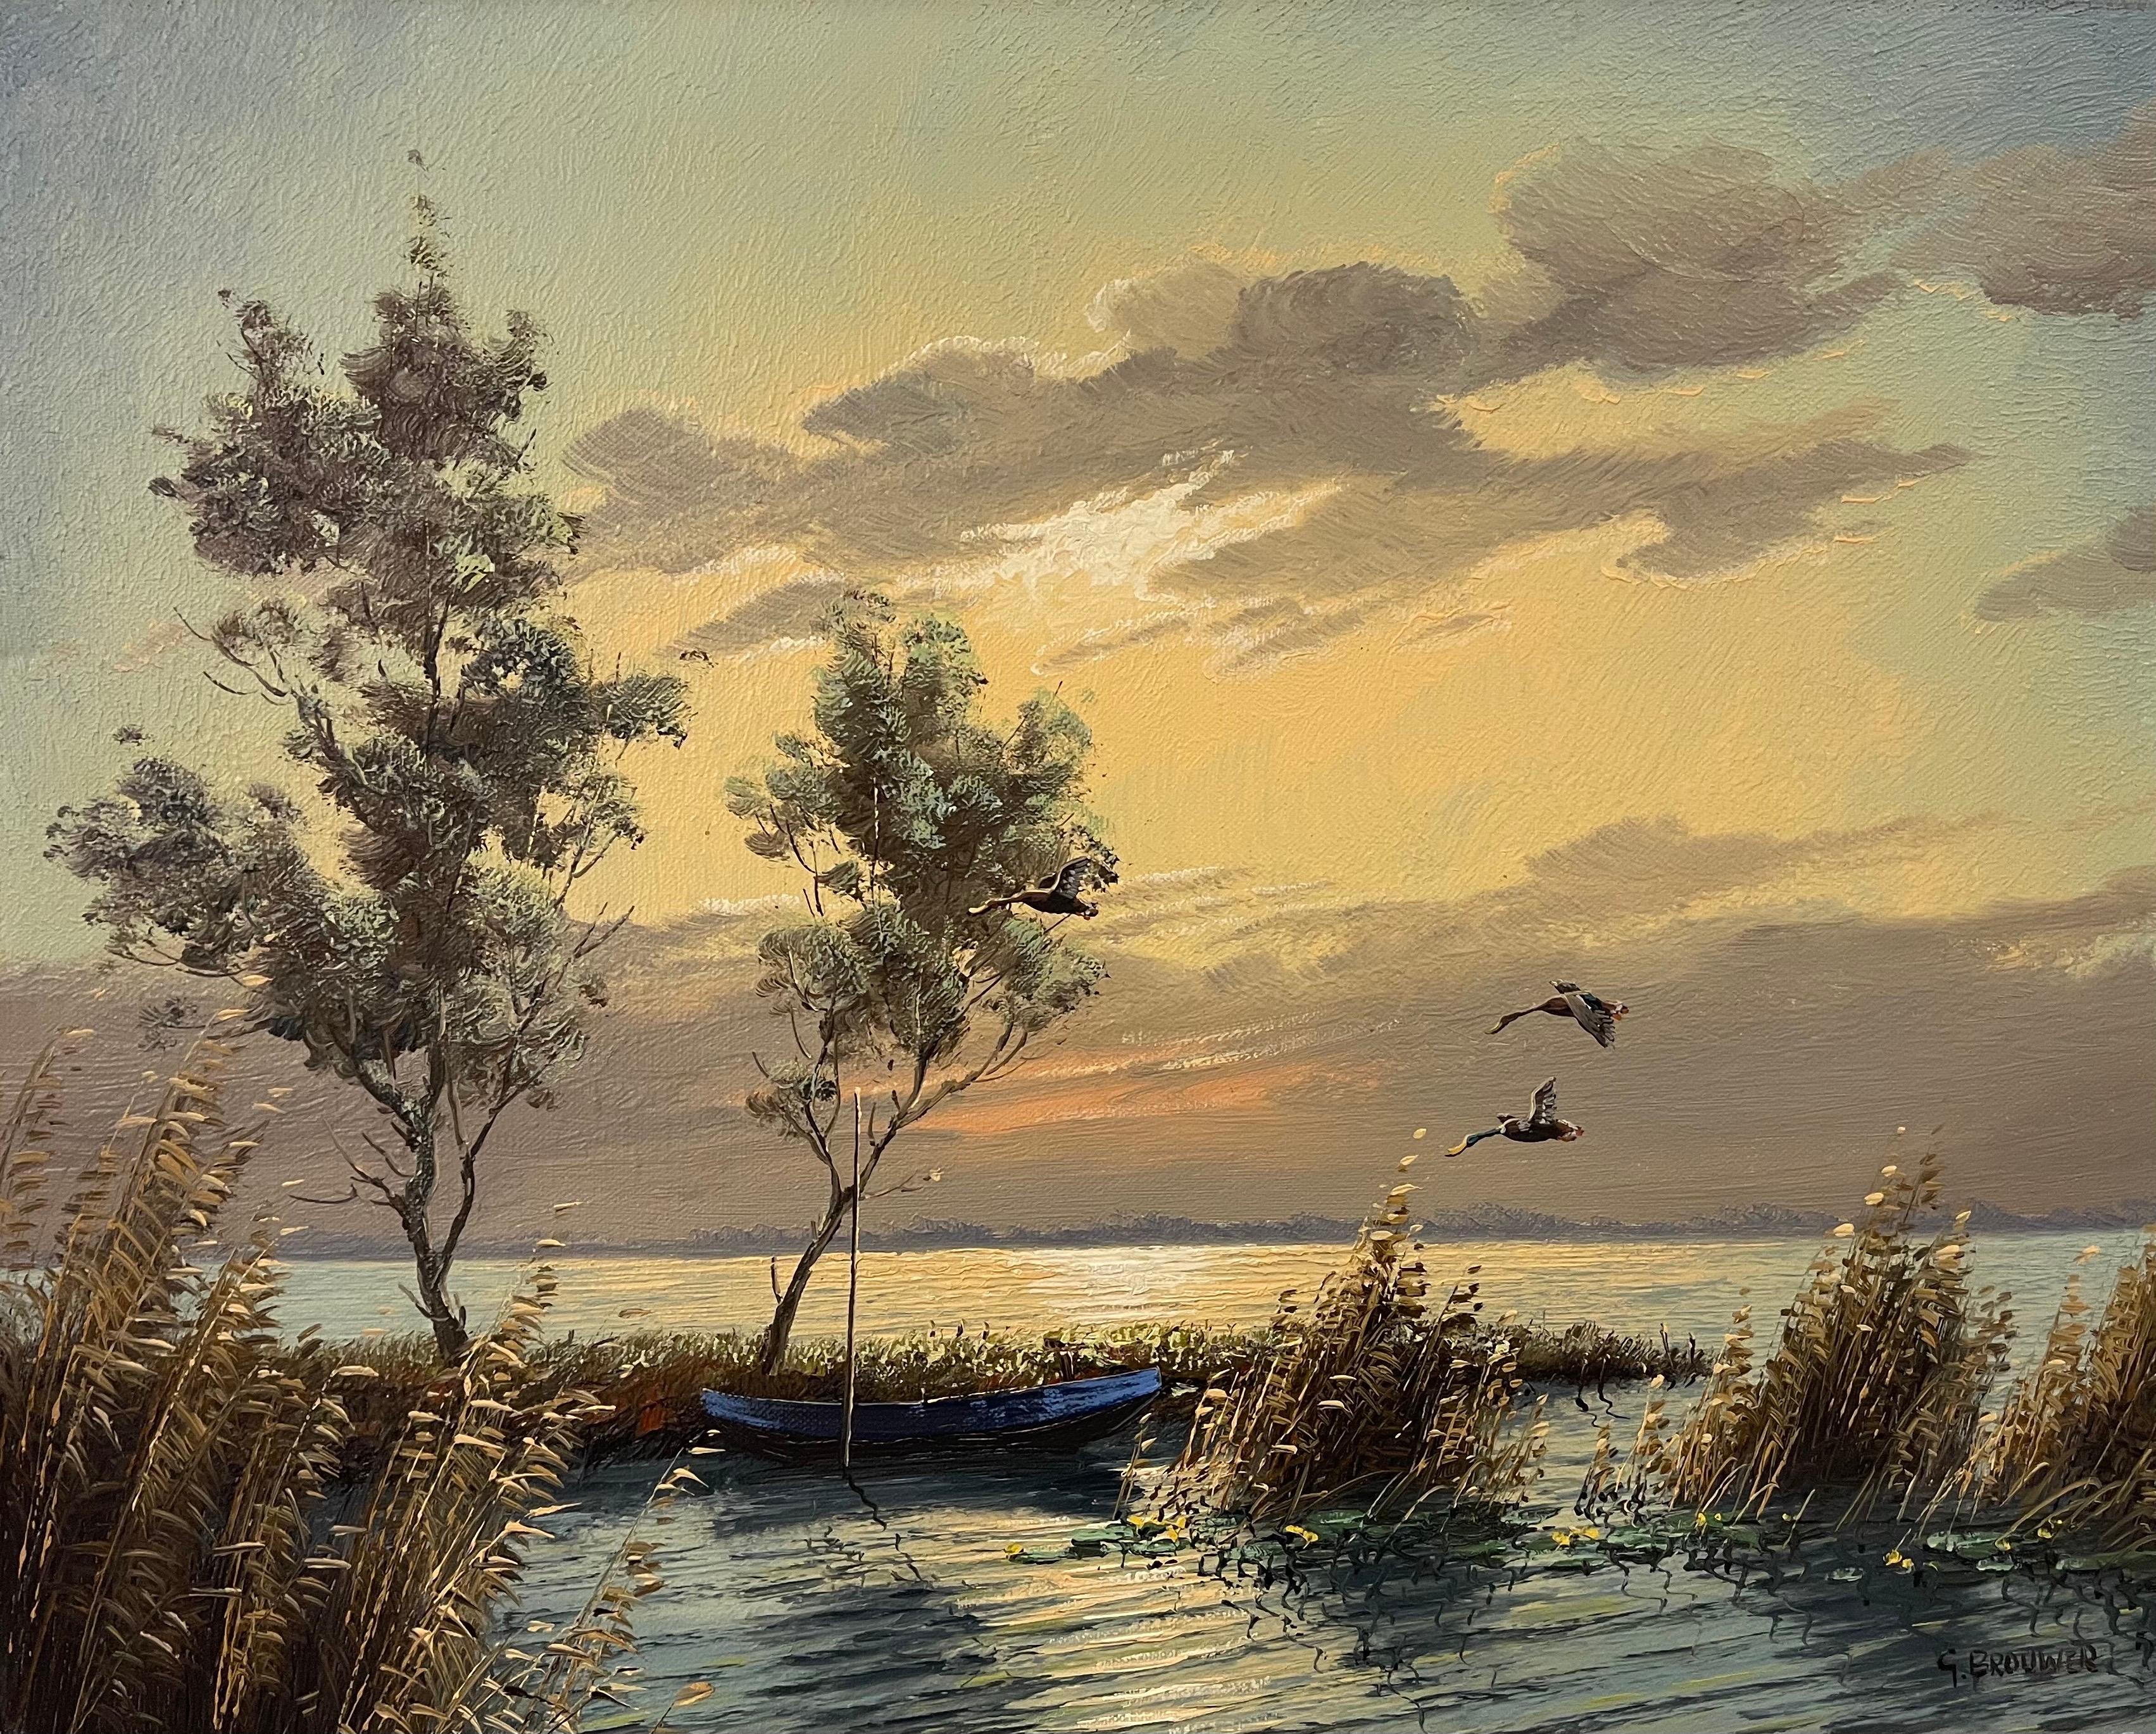 Stockenten im Flug Seelandschaft bei Sonnenuntergang von Gien Brouwer, einem niederländischen Maler des 20. Jahrhunderts. Gien Brouwer wurde am 23. März 1944 in Waddinxveen, Holland, geboren. Er schloss sein Studium an der Kunstakademie in Rotterdam